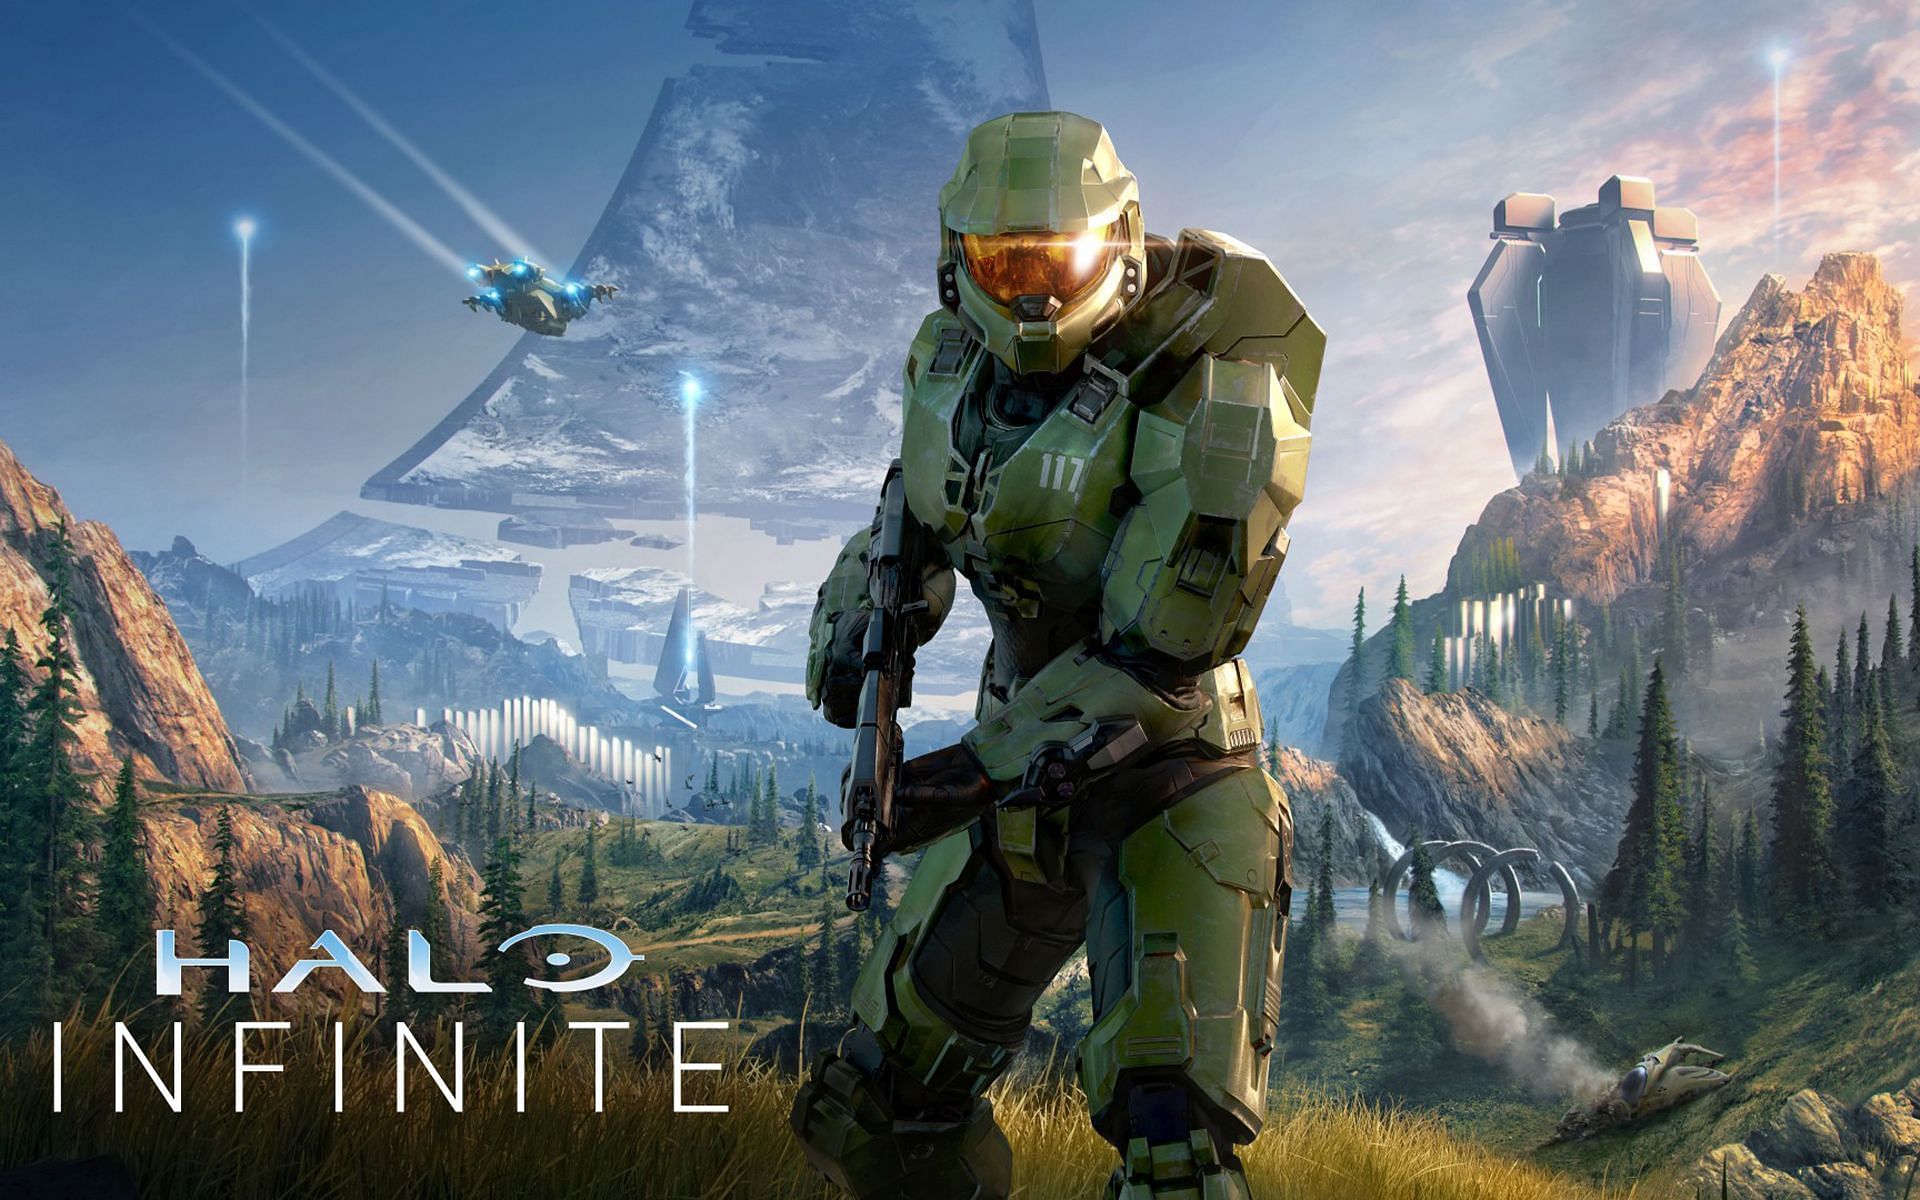 There are 18 secret achievements in Halo Infinite (Image via Xbox Game Studios)